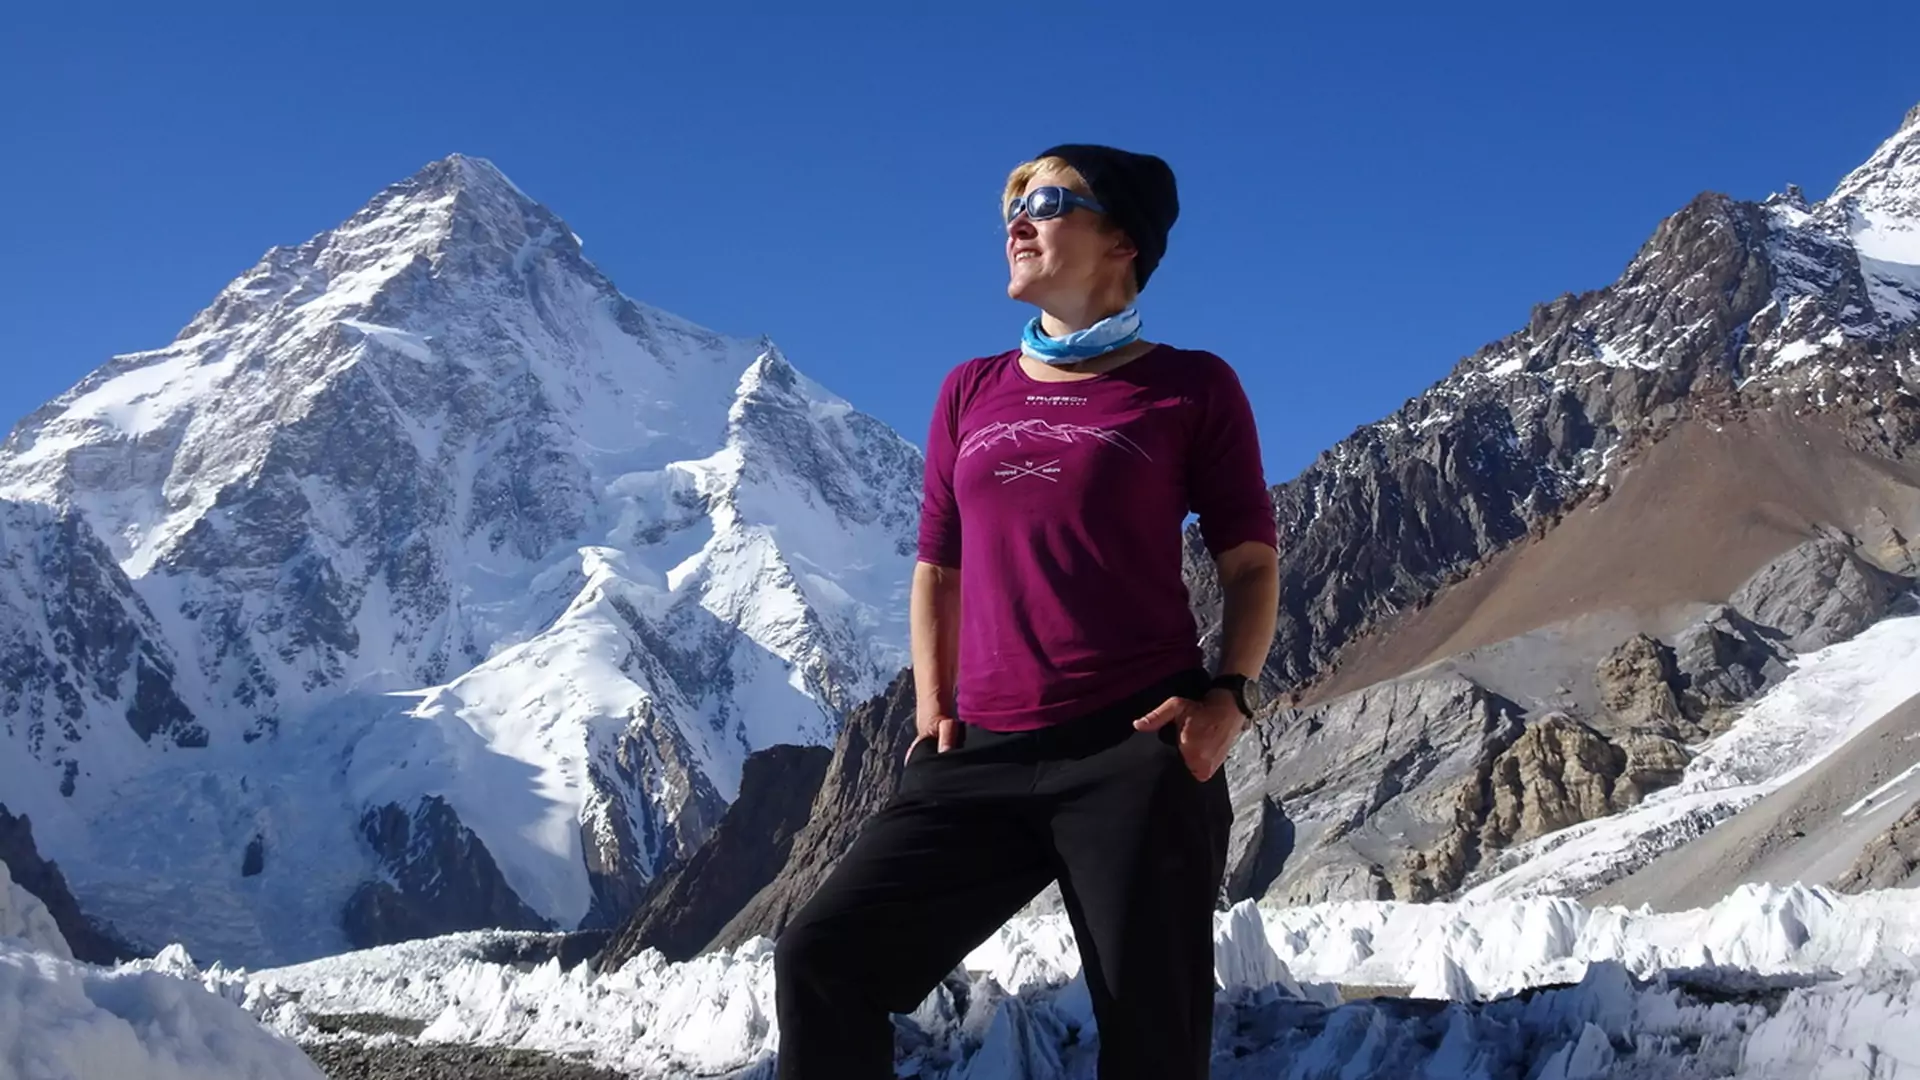 "Dzięki uporowi i determinacji mogę wszystko" – mówi himalaistka Monika Witkowska